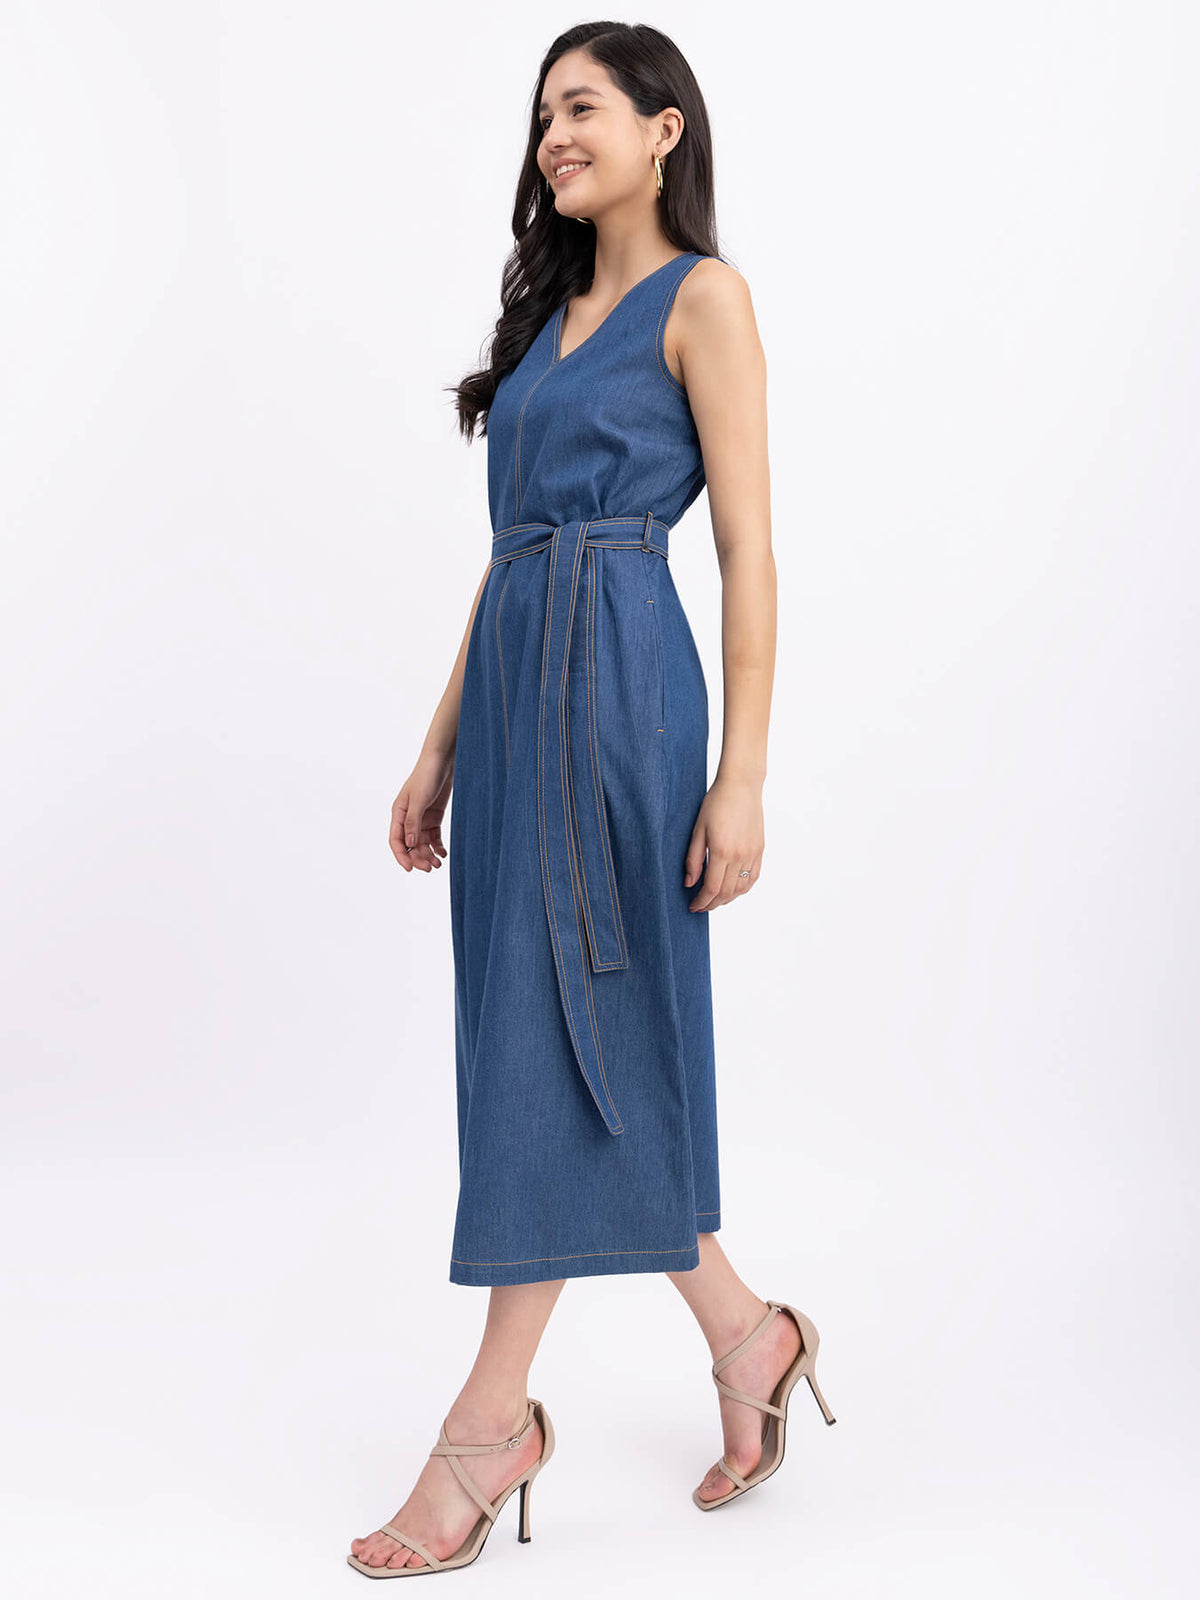 Denim V-Neck Sleeveless Dress - Navy Blue